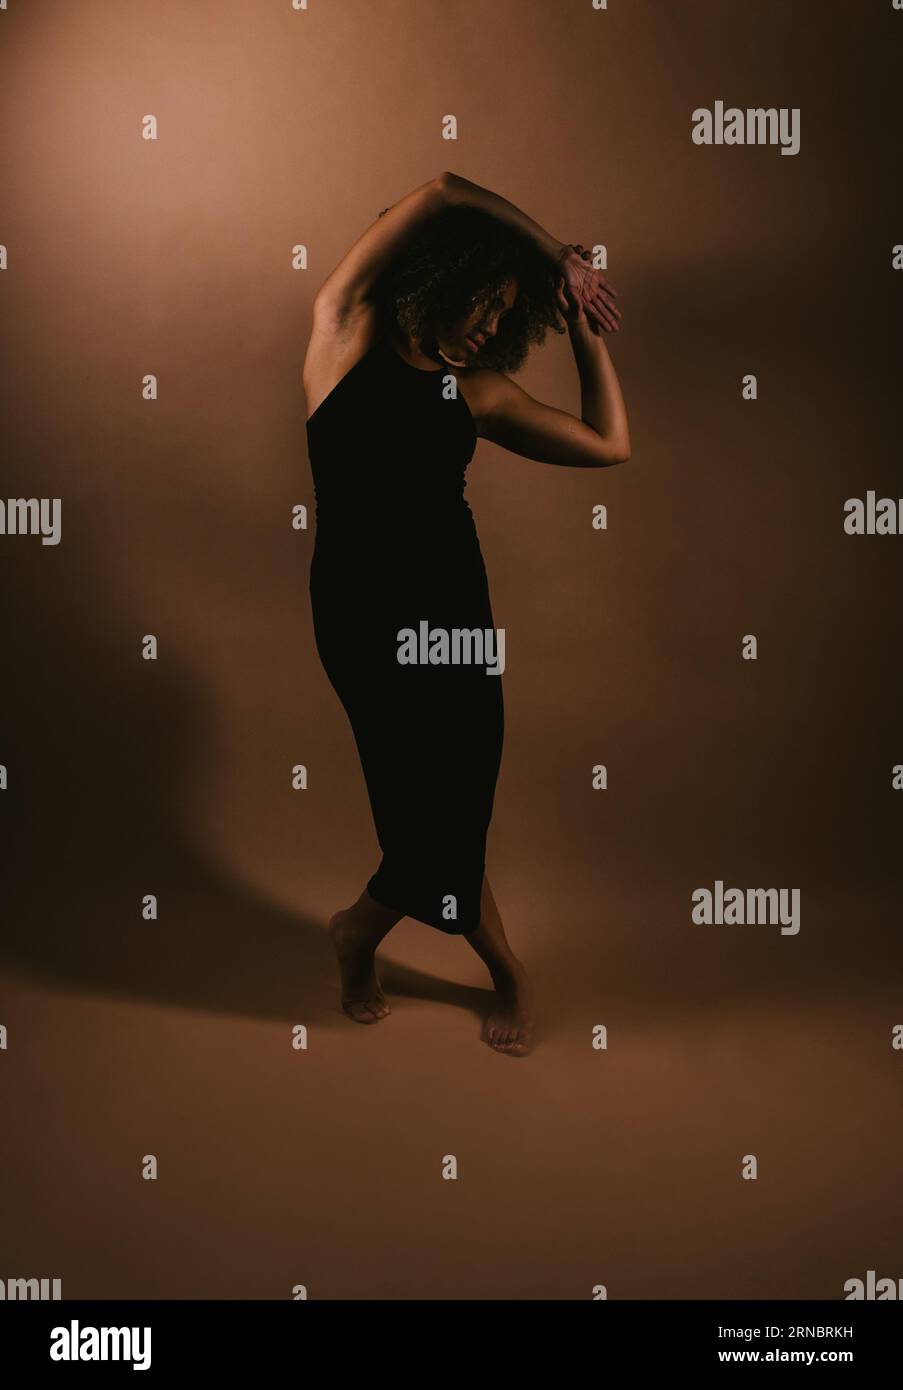 La danseuse noire fait de la danse contemporaine pose dans la lumière du studio Banque D'Images